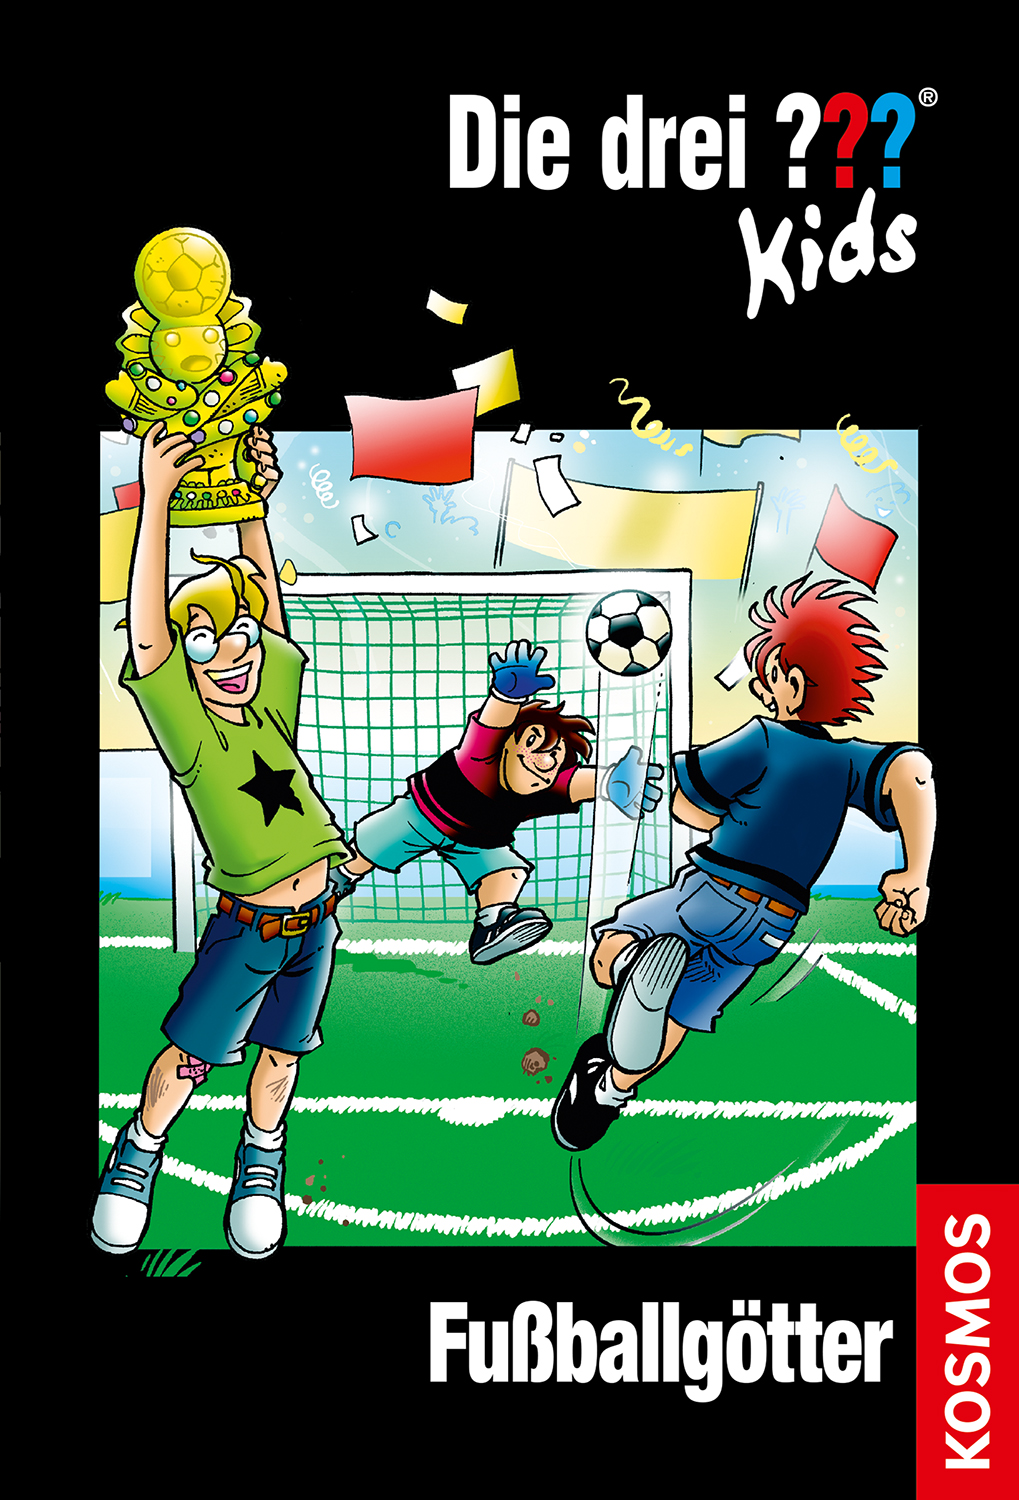 Die Drei ??? (Fragezeichen) Kids, Buch-Band 500: Die drei ??? Kids, 42, Fußballgötter